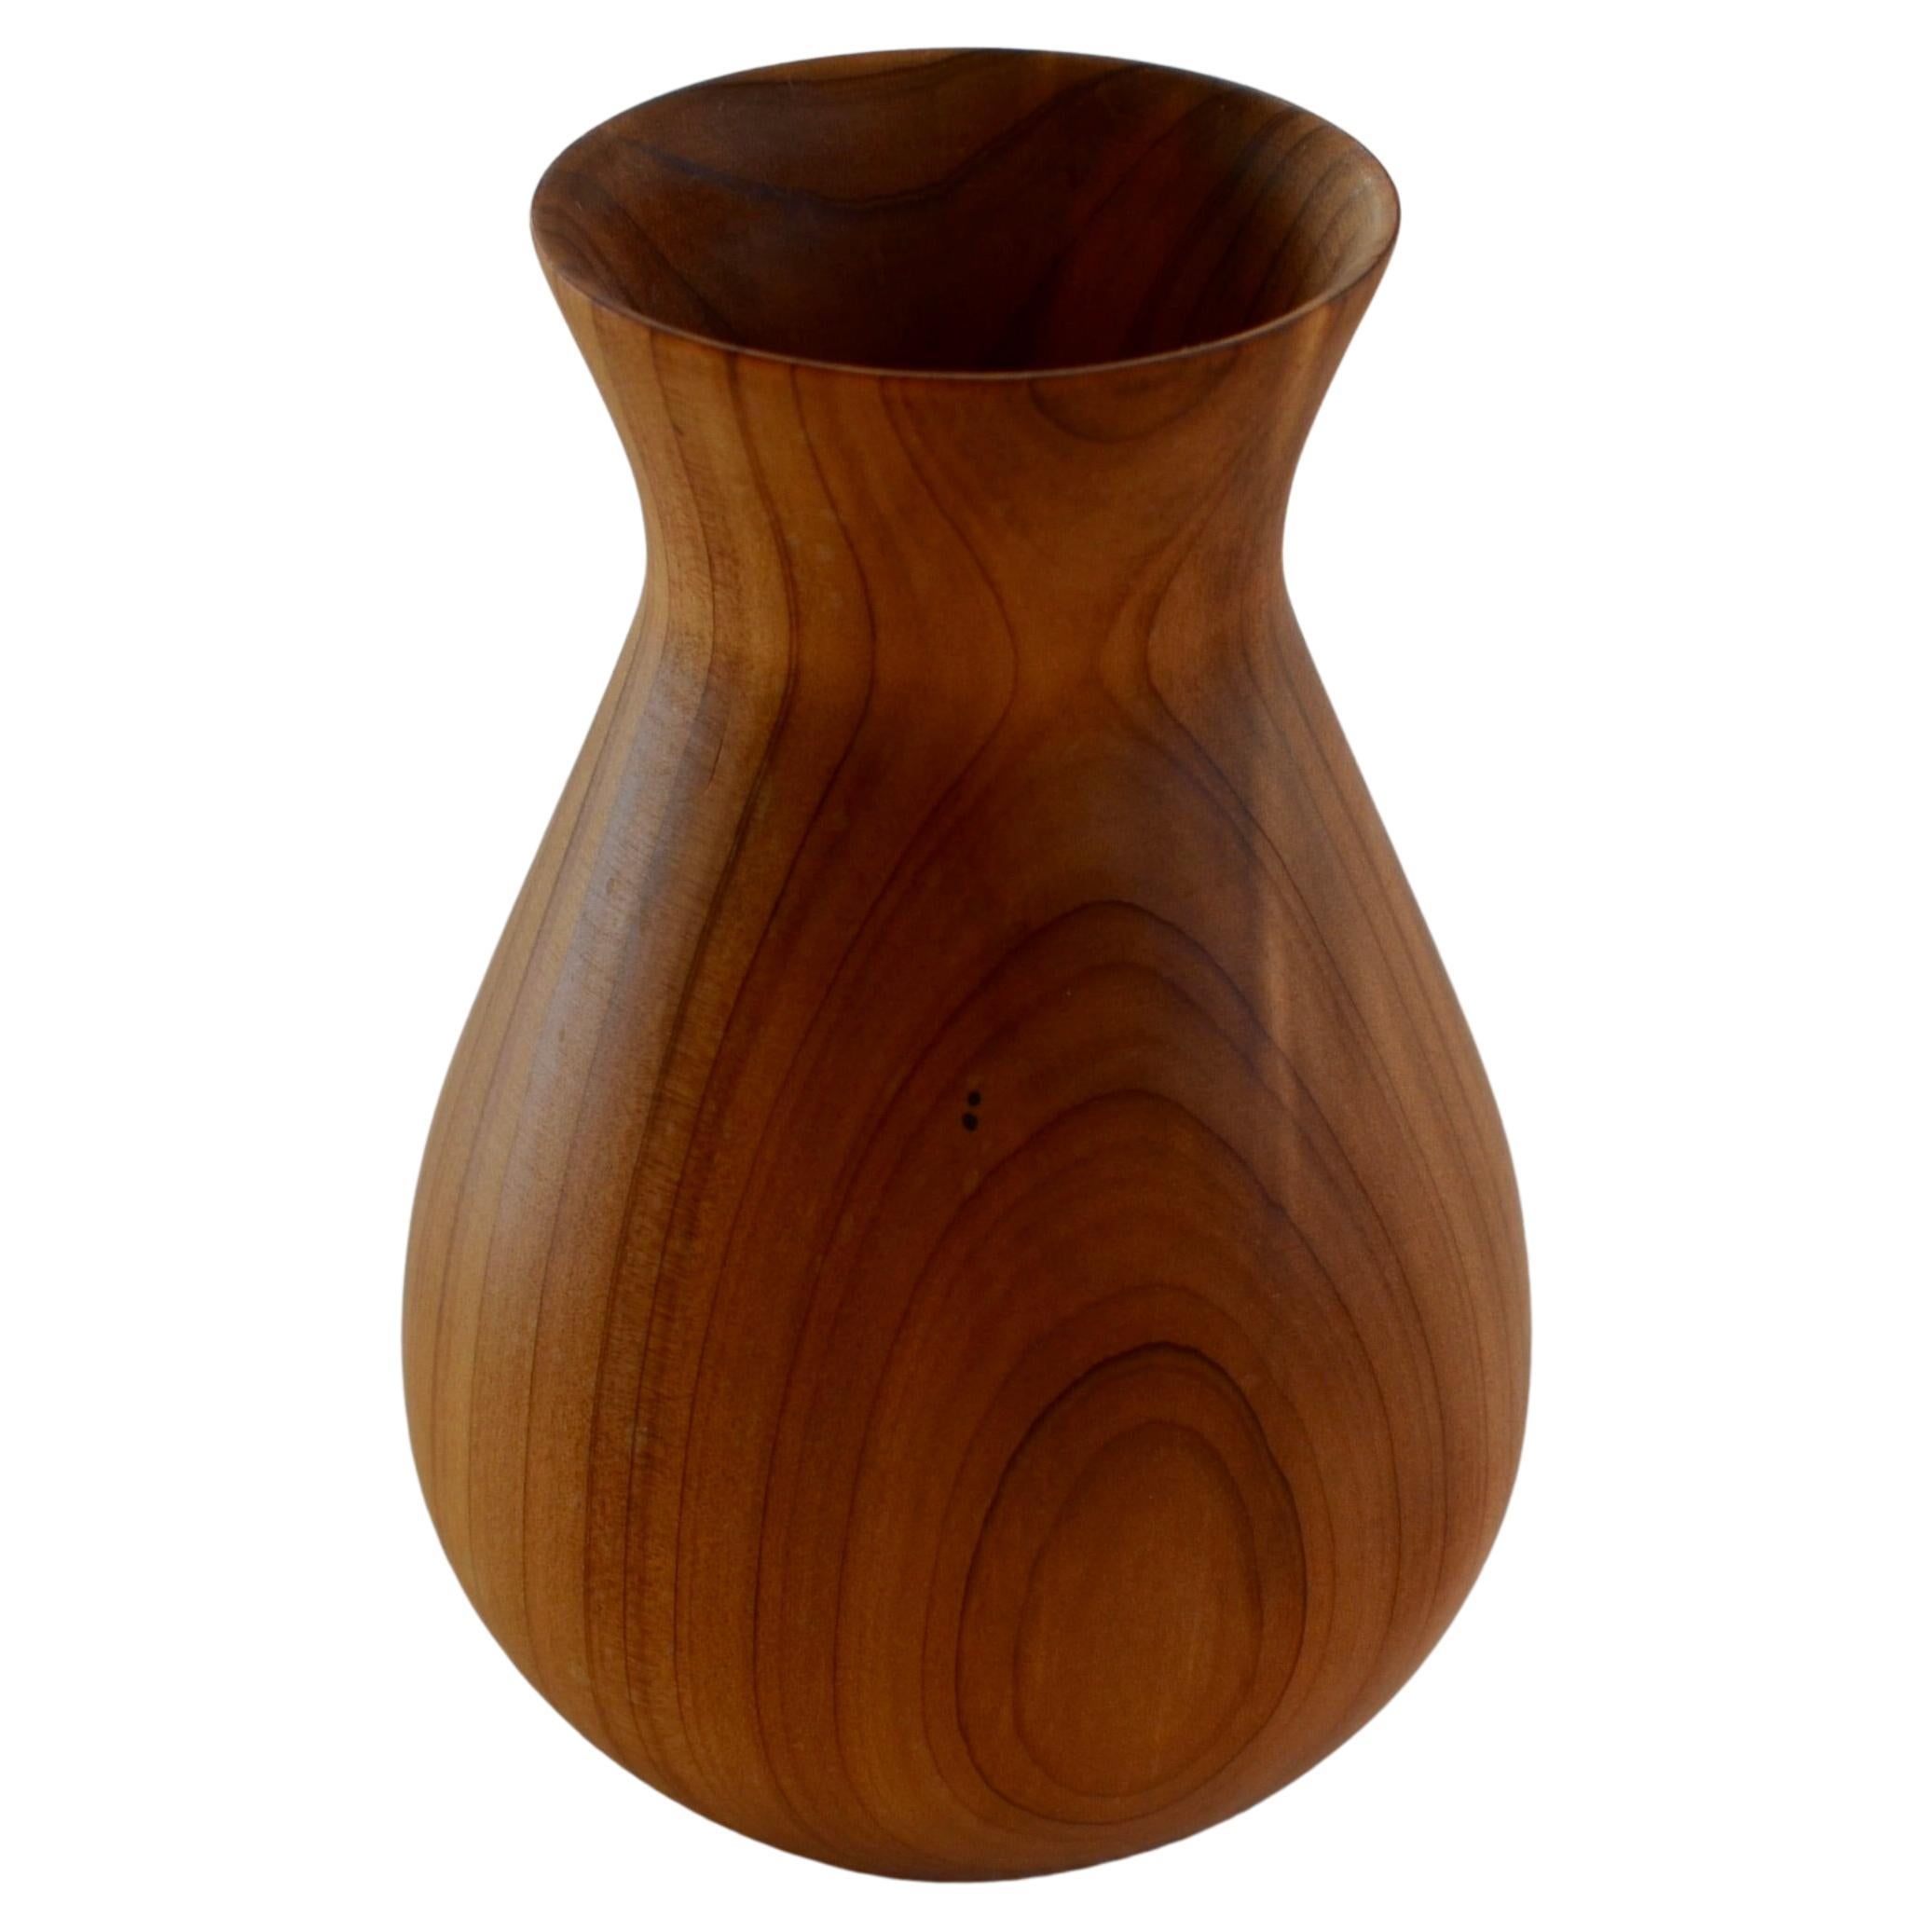 Hand-Carved Red Oak Vase